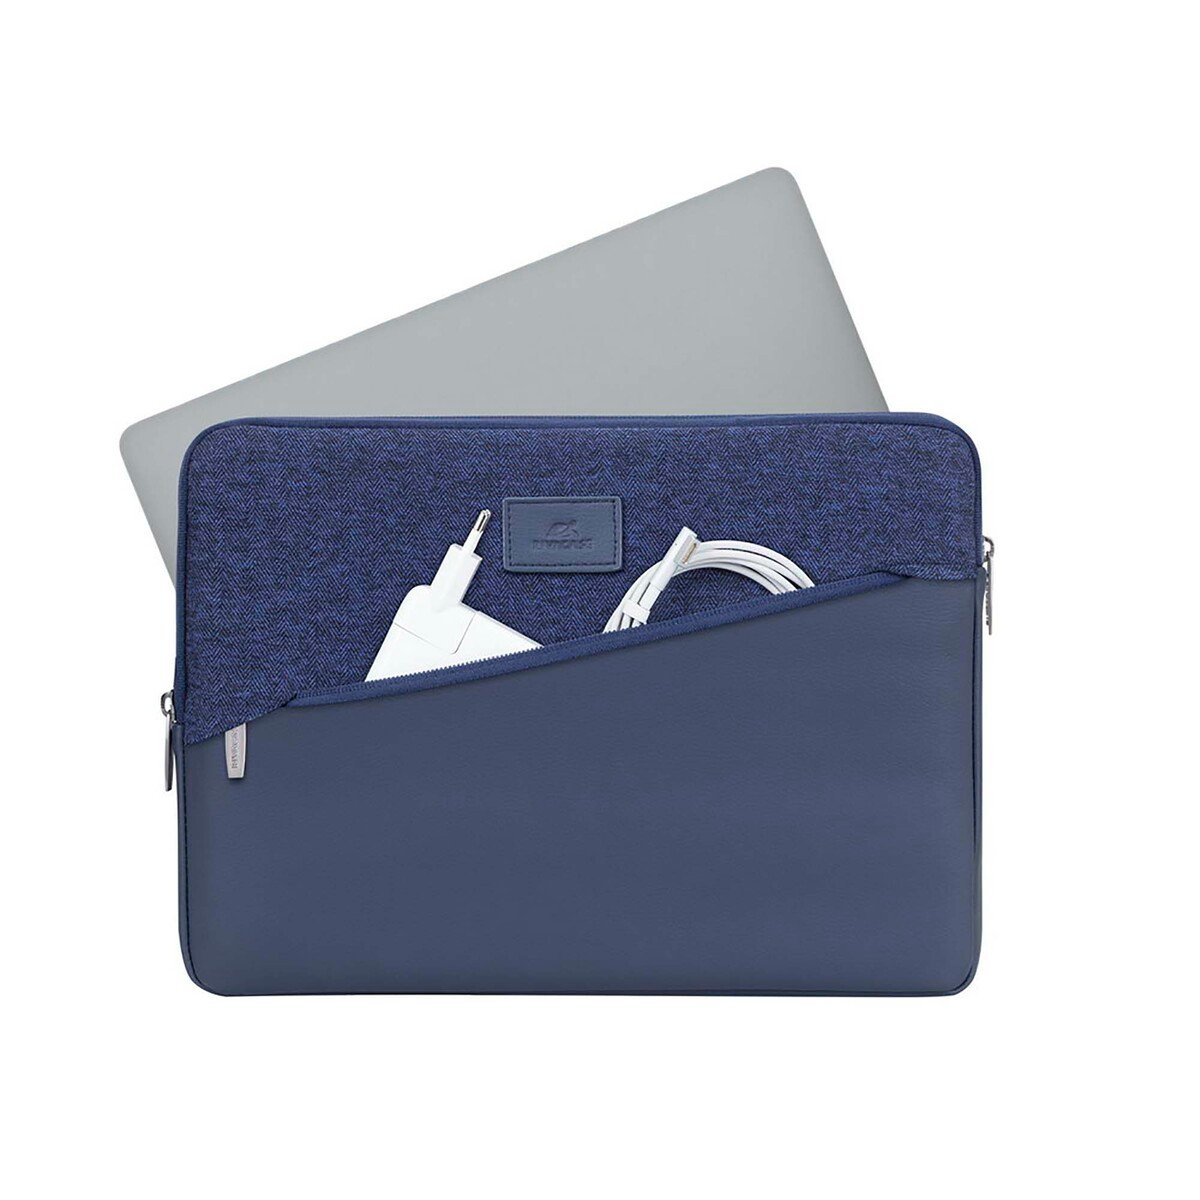 Rivacase Macbook Case 7903 13.3/12 inch Blue